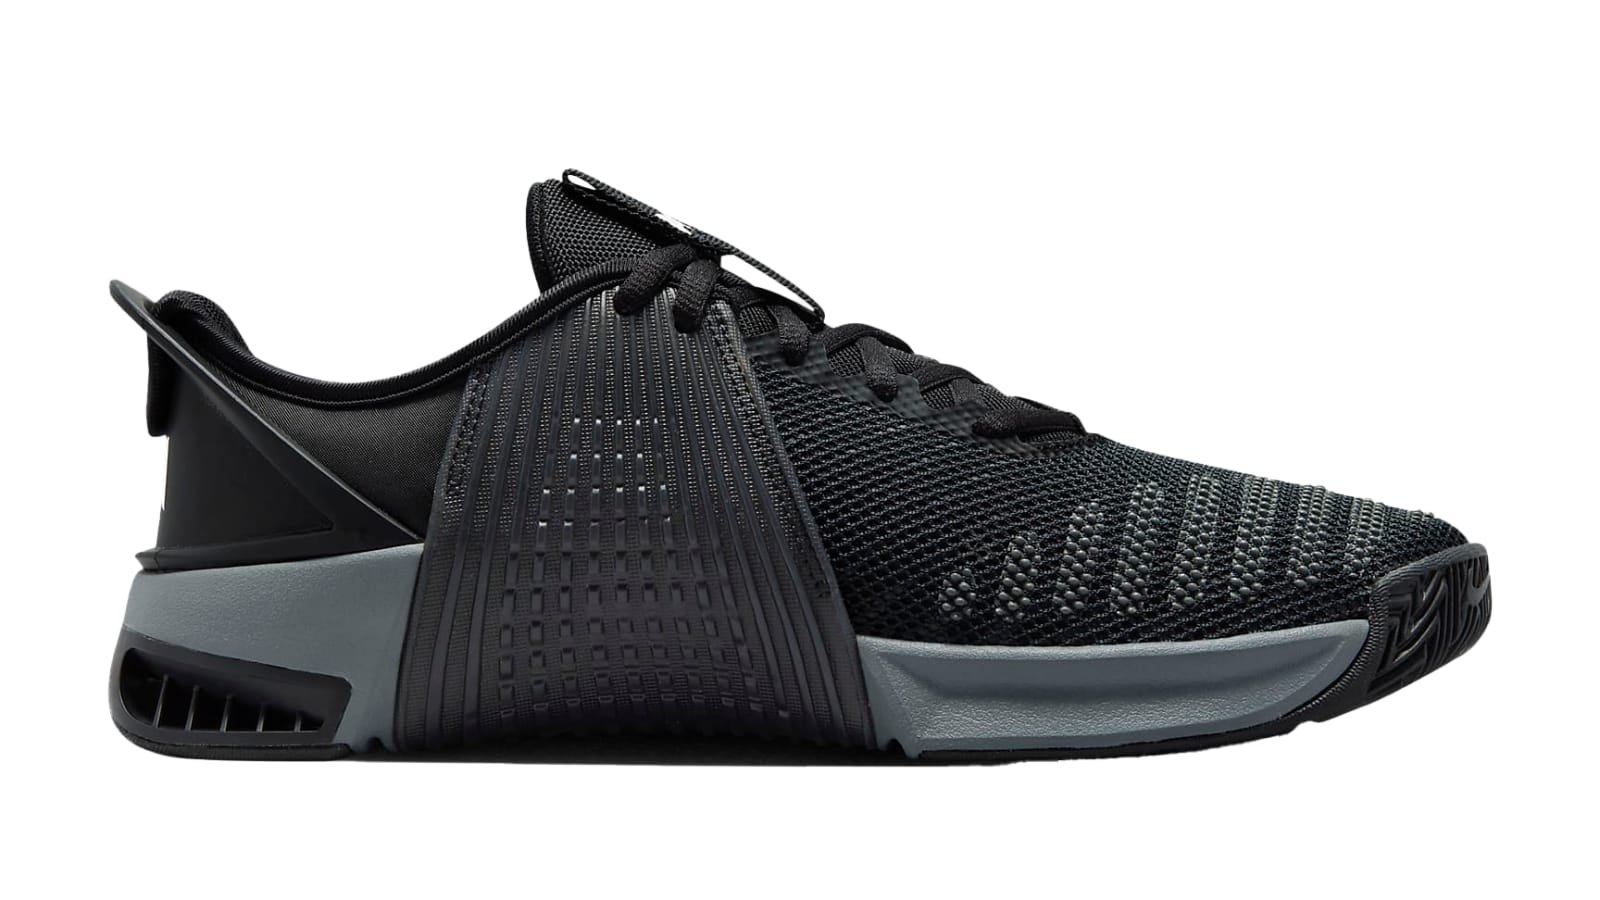 Nike Metcon 9 EasyOn - Men's - Black / Anthracite / Smoke Gray / White